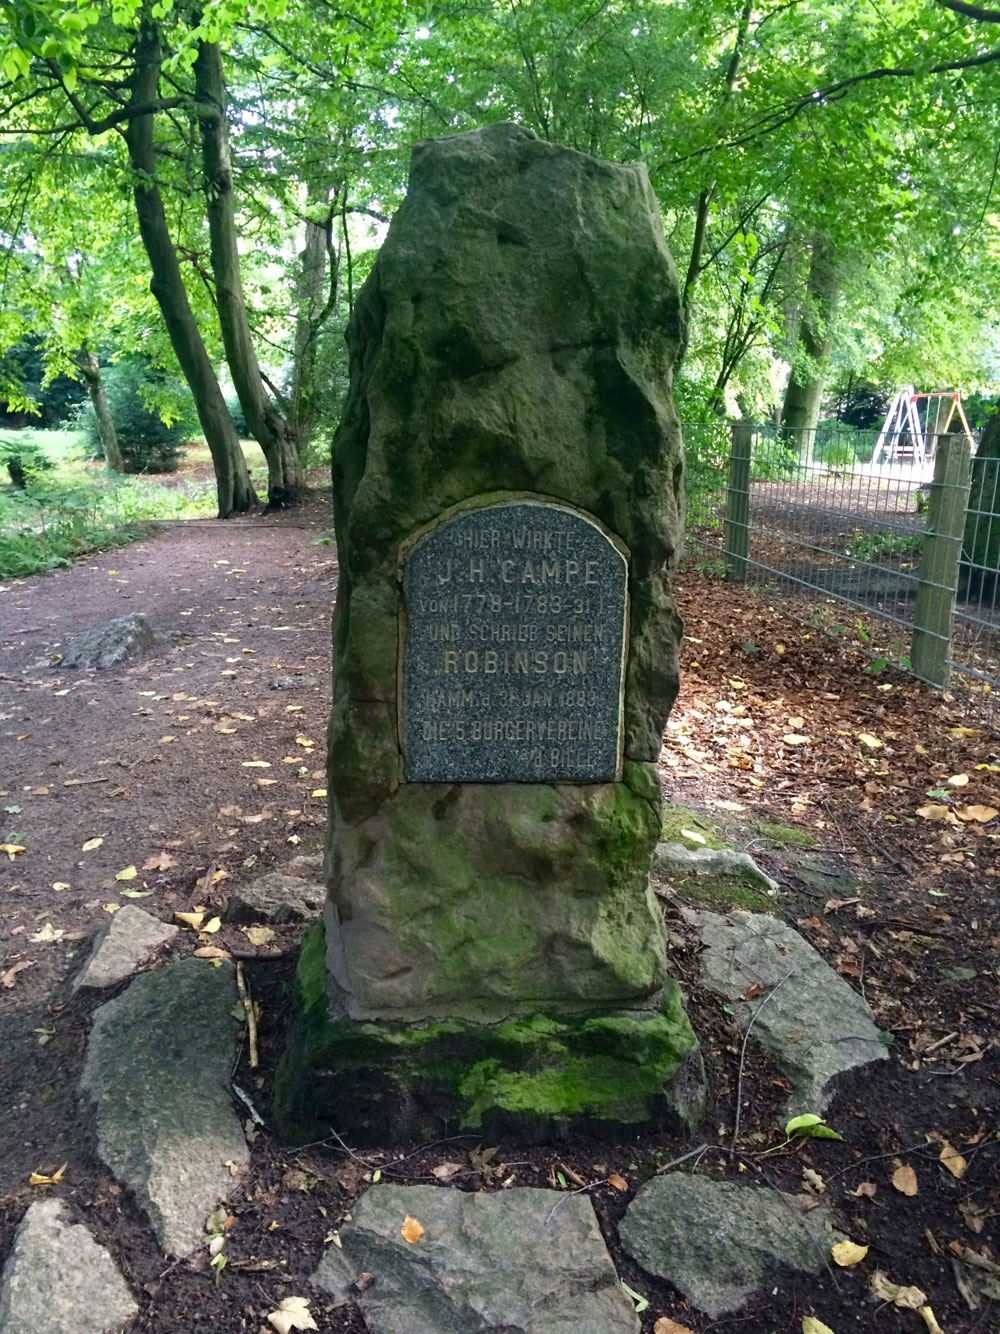 Commemoration for J. H. Campe in Hammer Park